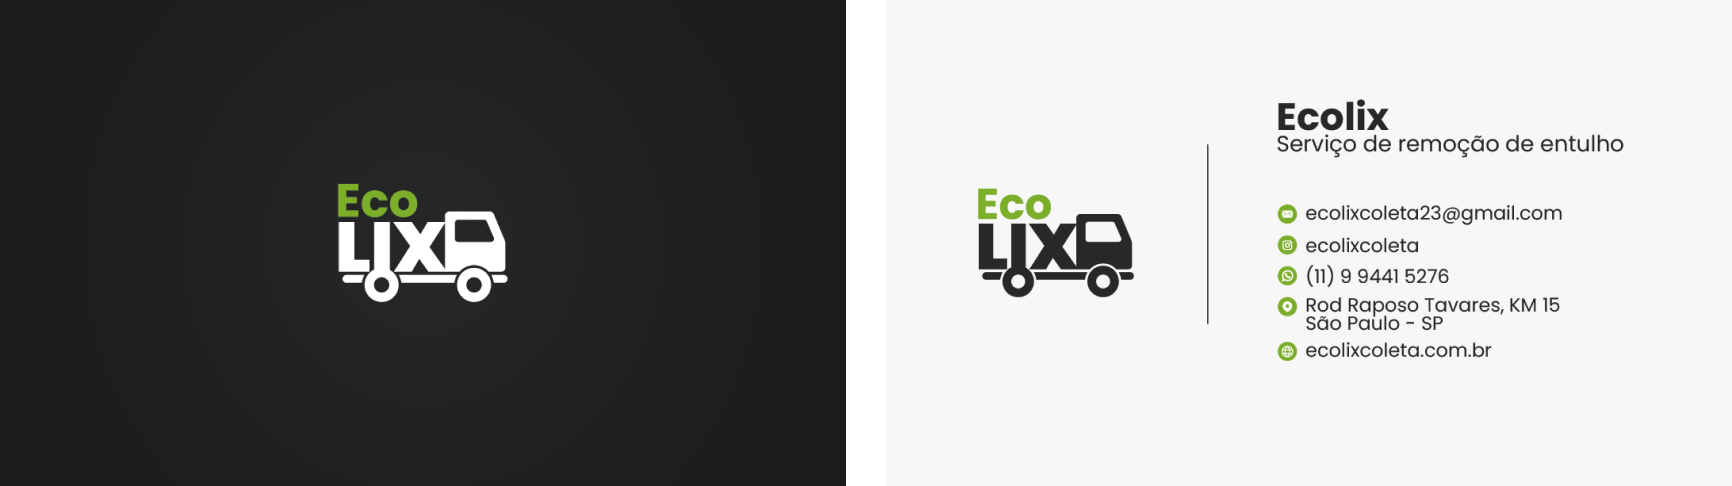 Ecolix Cartão de Visita